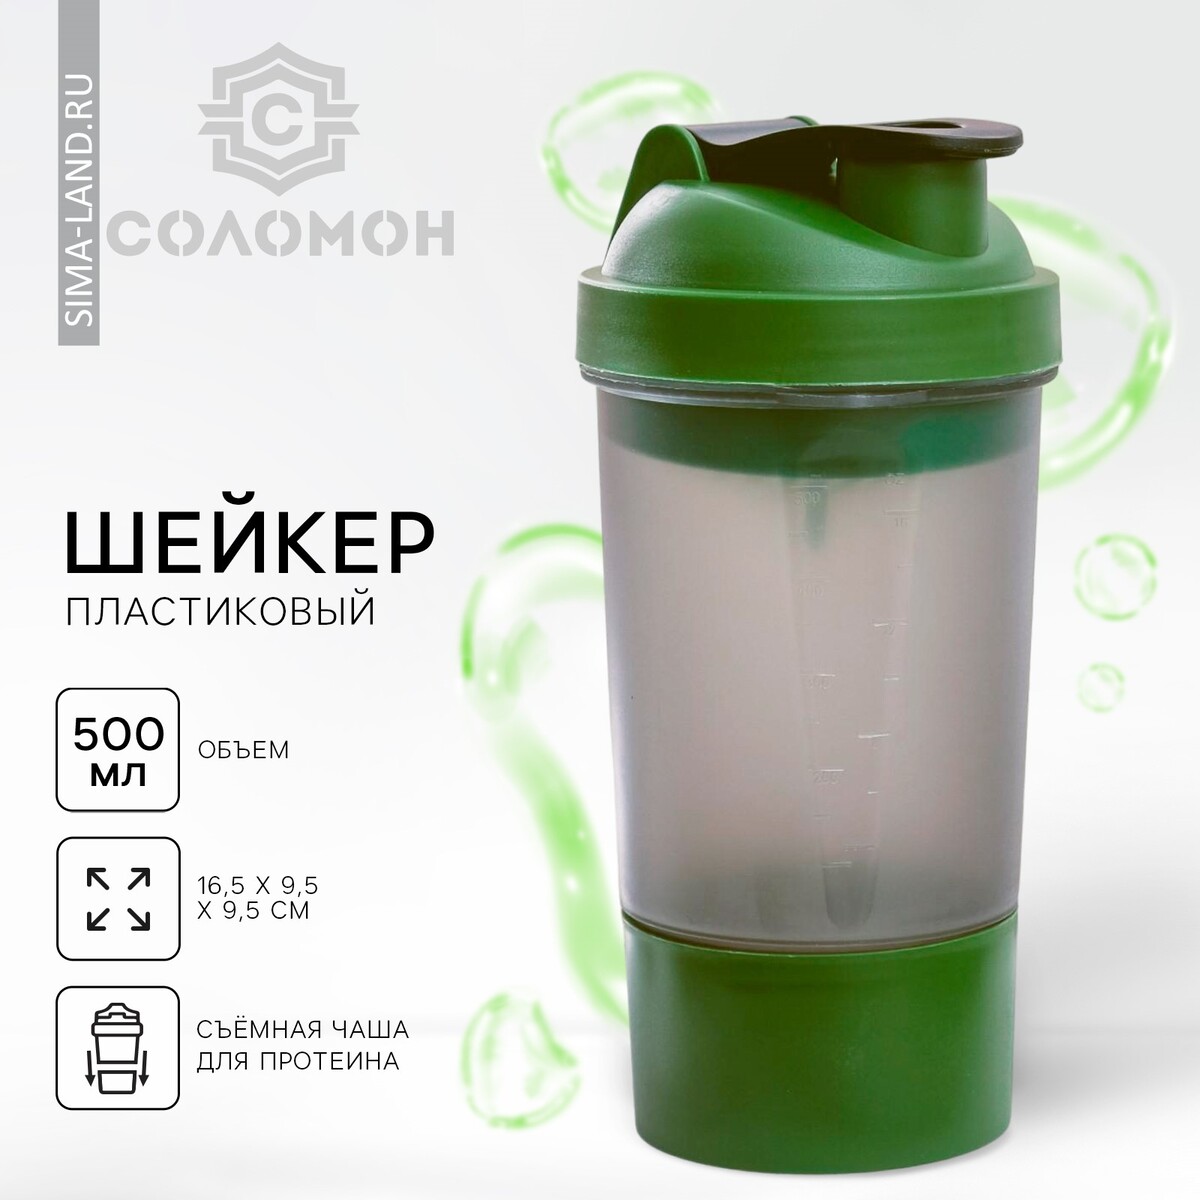 Шейкер спортивный с чашей под протеин, серо-зеленый, 500 мл краска акриловая ak interactive grey green – figures серо зеленый 17 мл ak11424